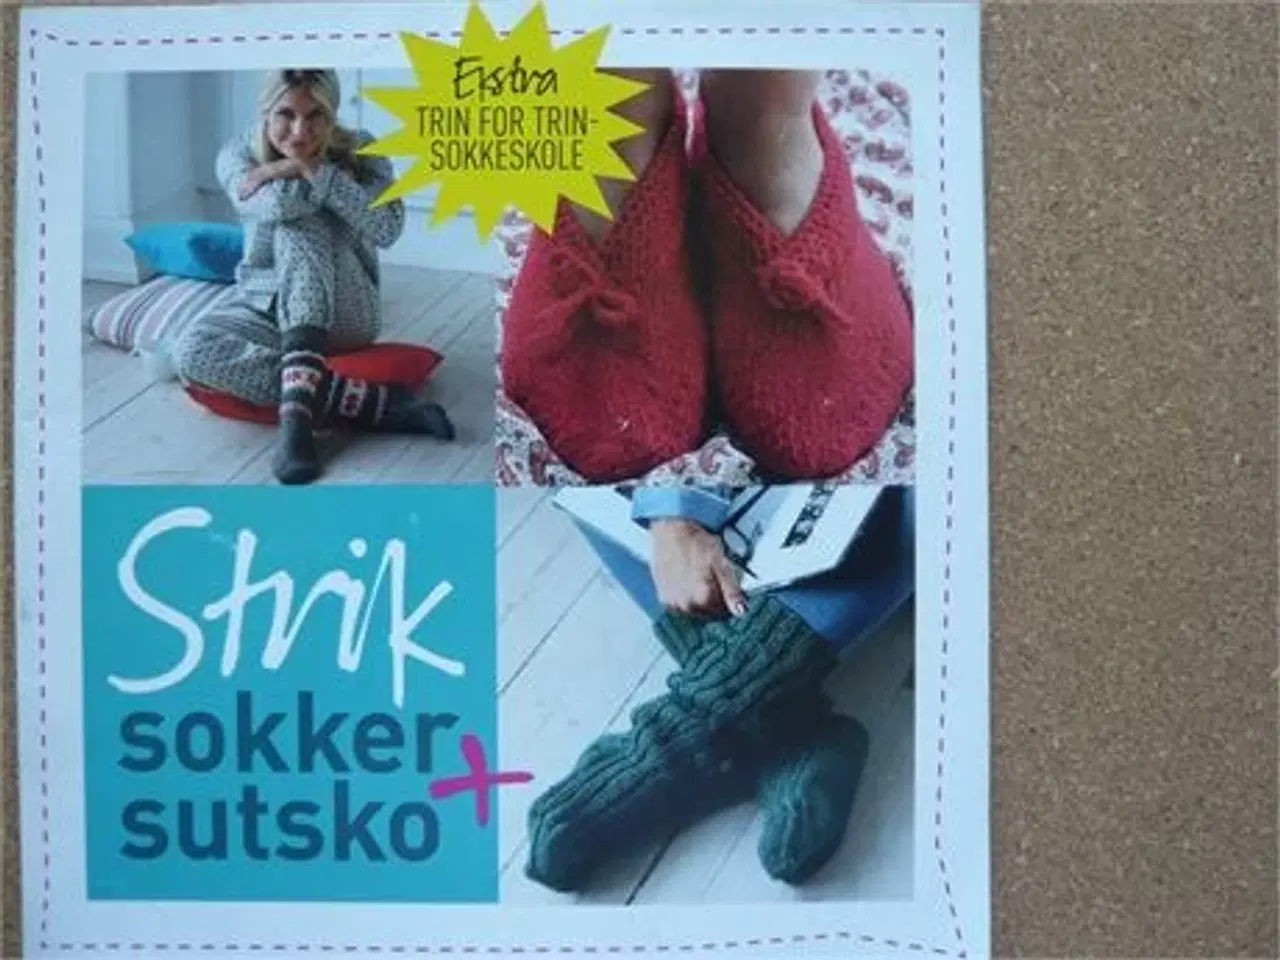 Billede 5 - Strikkehæfter med sokker, strømper og sutsko (6)